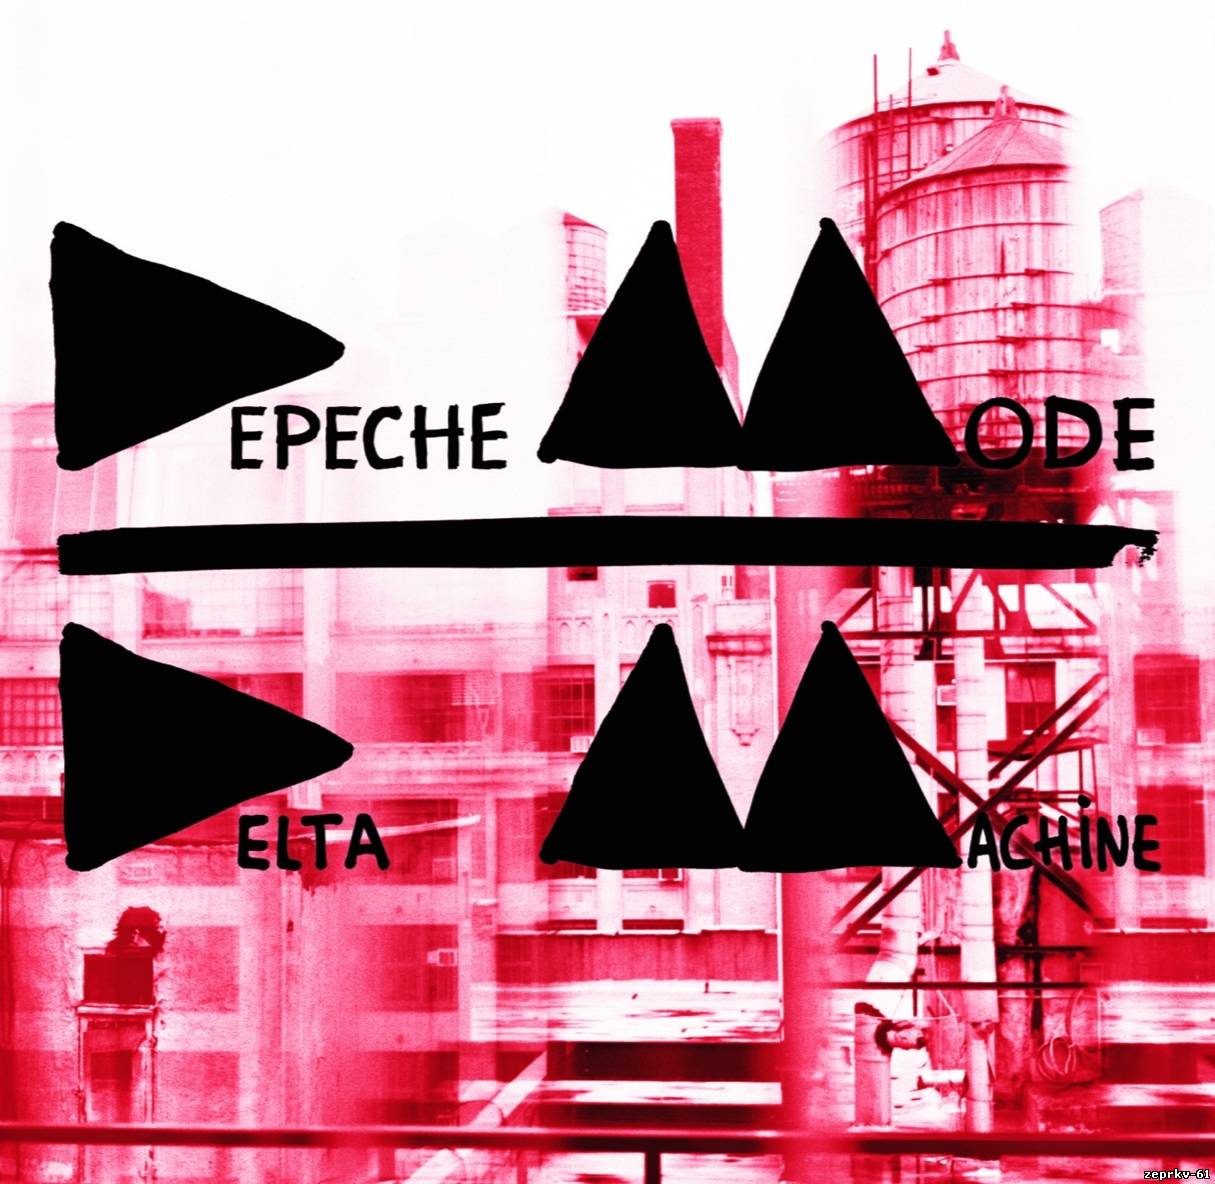 Depeche Mode Альбом - Delta Machine 2013 Скачать бесплатно